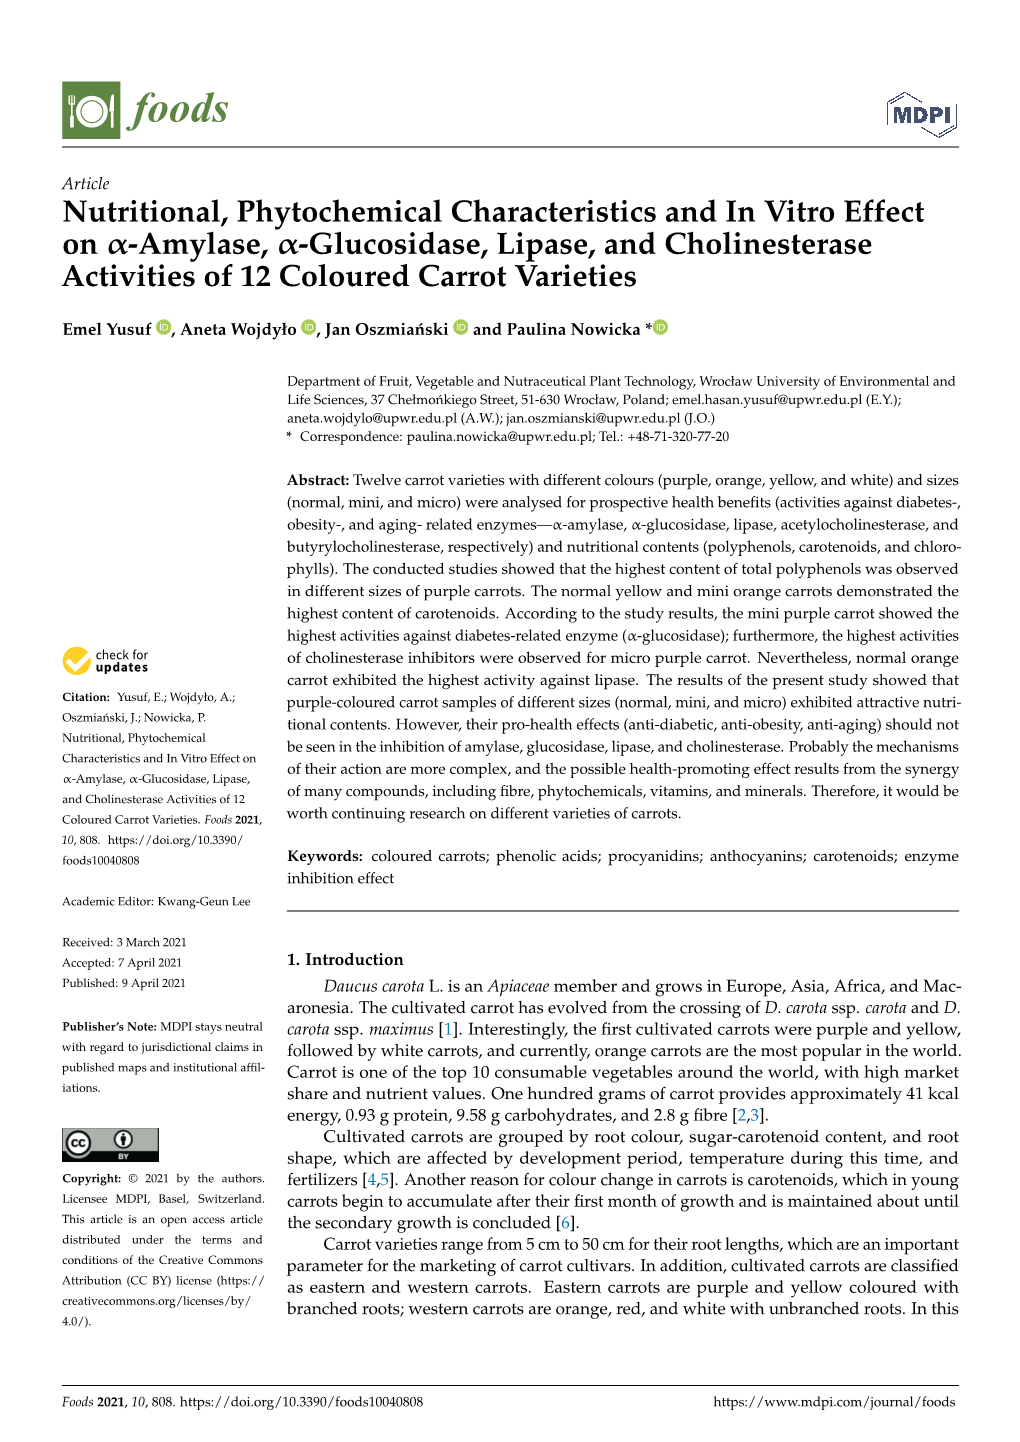 Amylase, -Glucosidase, Lipase, and Cholinesterase Activities